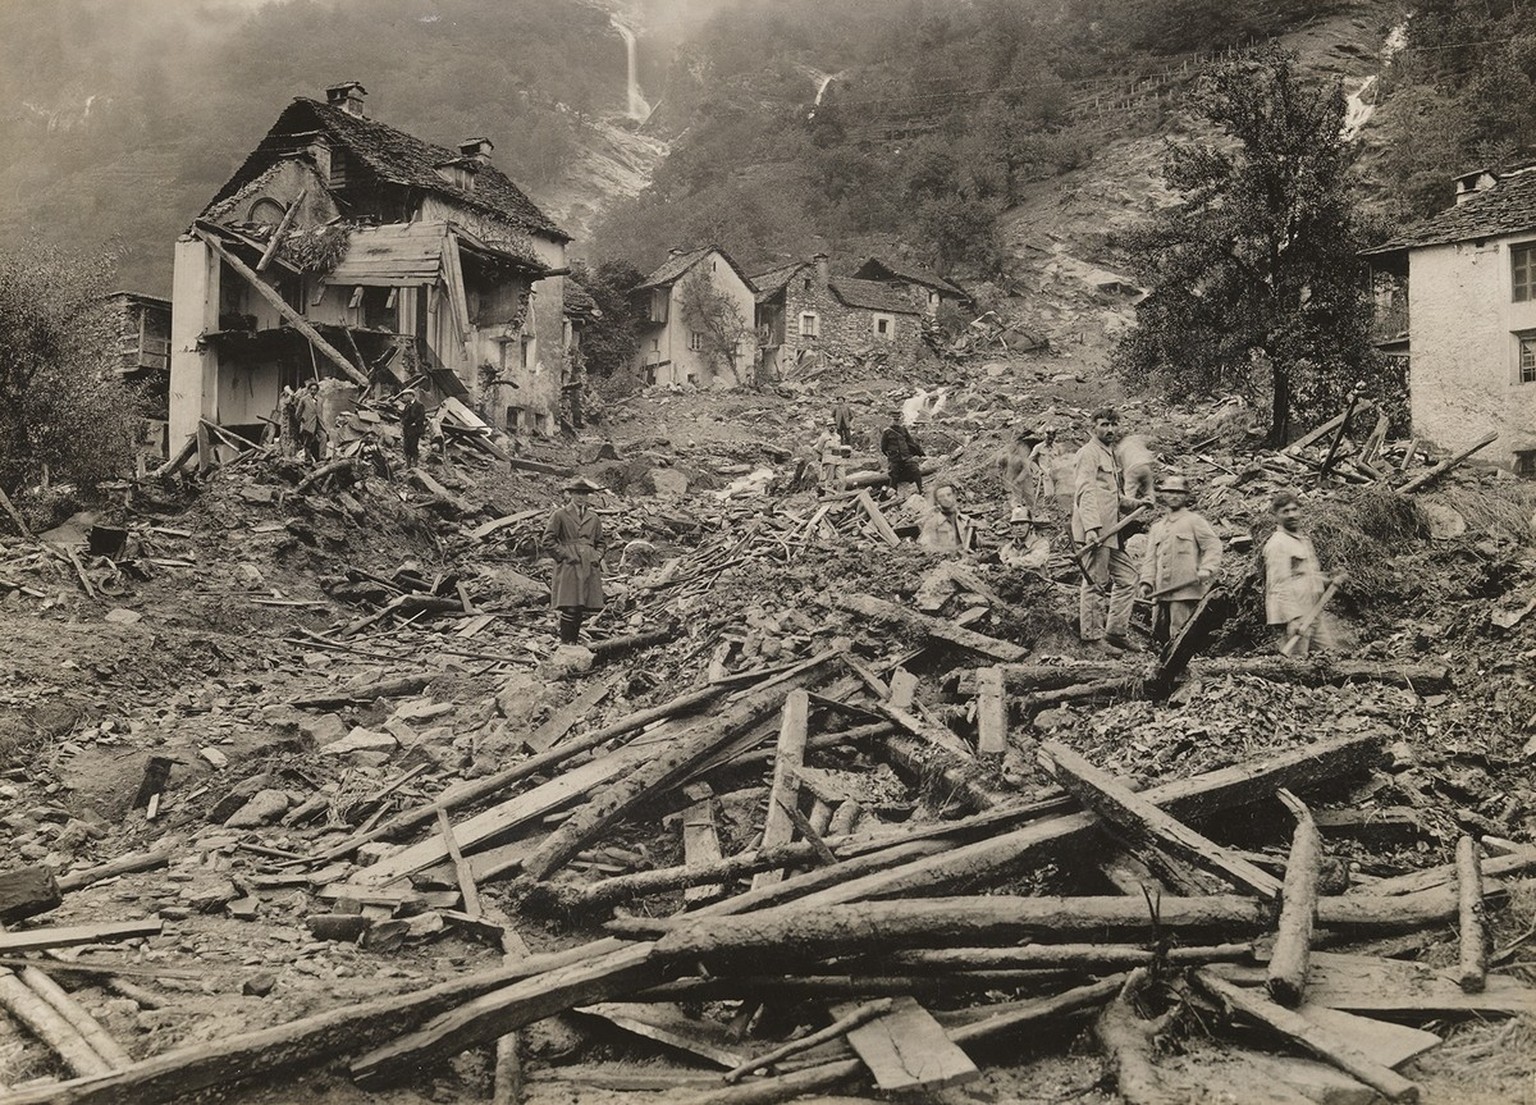 En 1924, un glissement de terrain détruit une partie du village de Someo situé dans le Val Maggia. Les glissements de terrain, qui sont fréquents dans le Tessin, résultent du déboisement de grandes ét ...